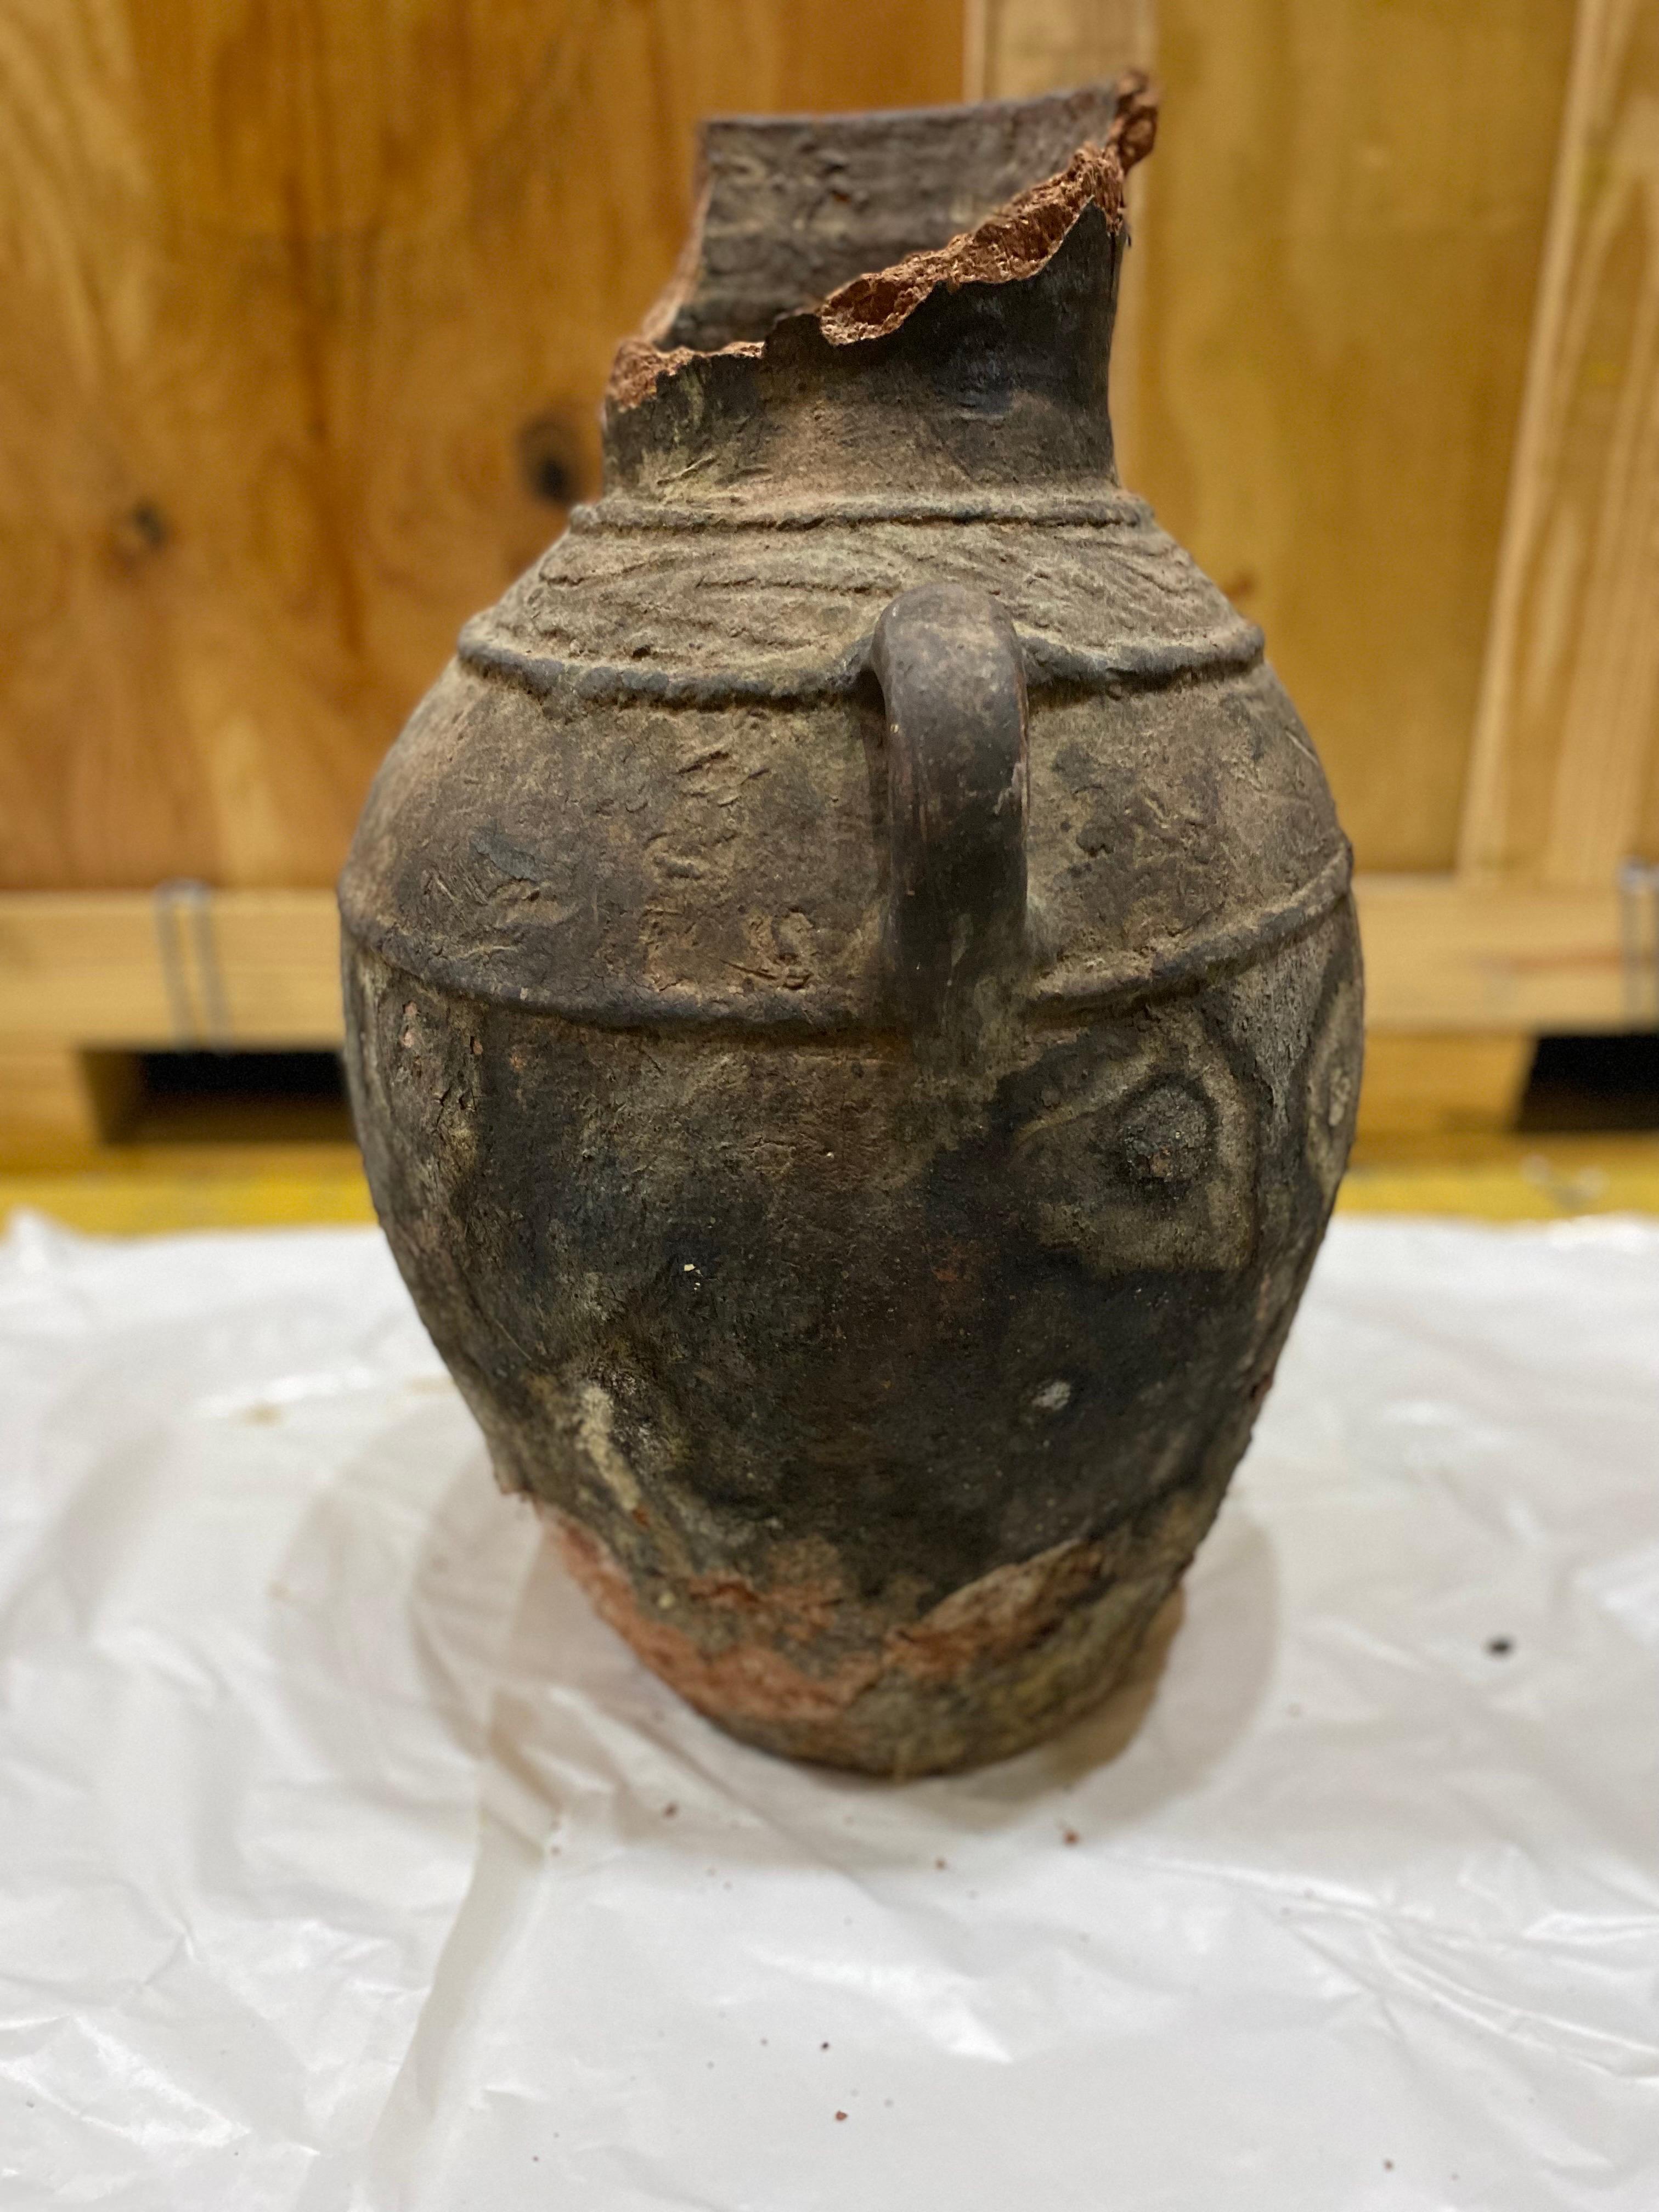 Fragment de grand pot en terre cuite égyptien précoce avec des bras
Une pièce ancienne, peut-être antérieure au XIXe siècle.  Acheté en France car originaire d'Egypte. La moitié supérieure est manquante. Beaucoup d'usure et de perte mais une pièce